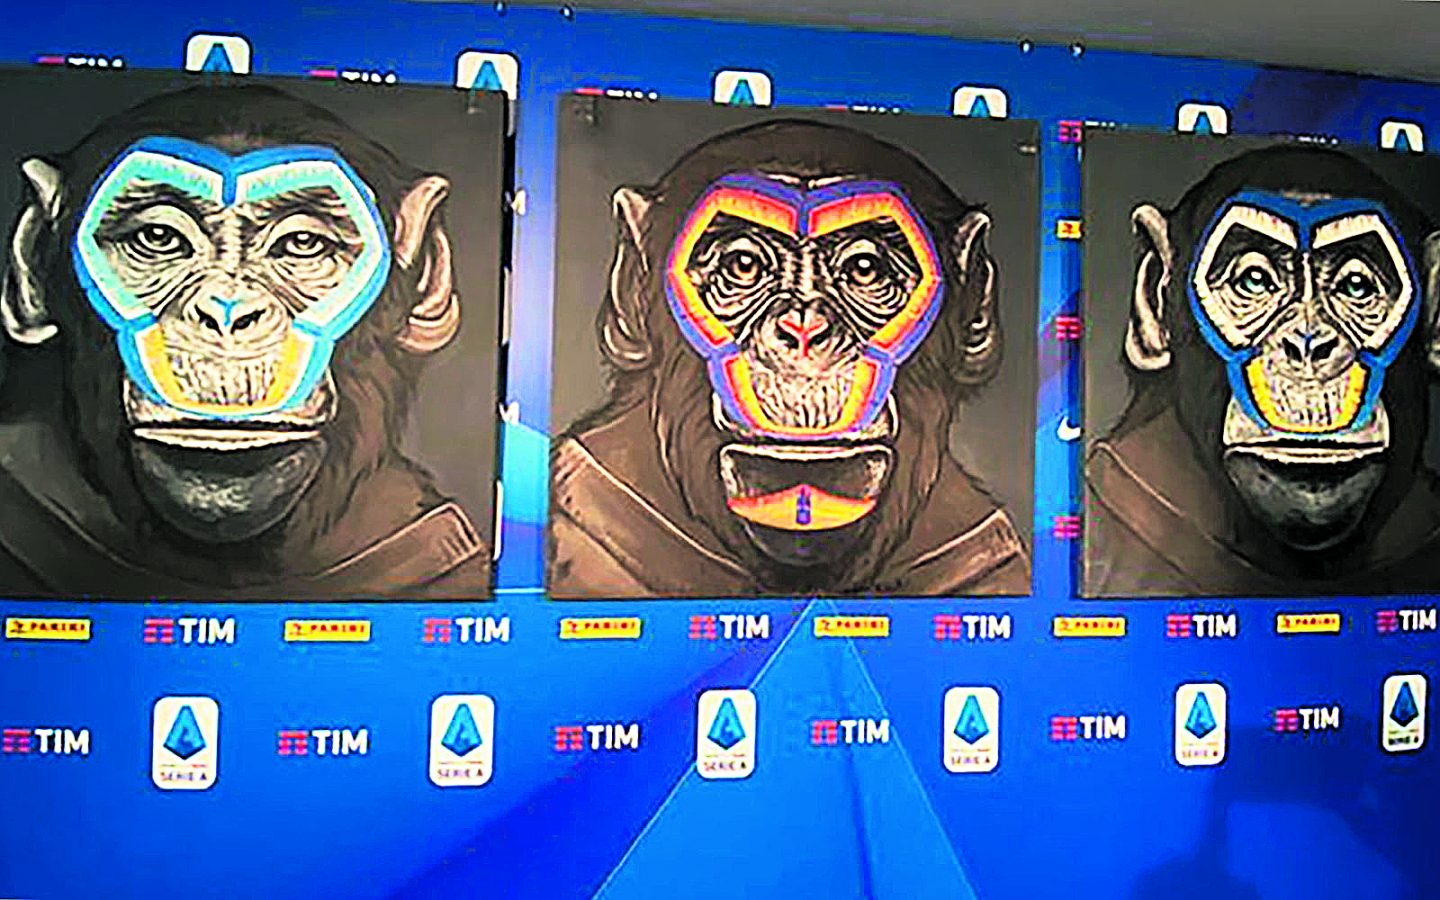 Serie A, ırkçılıkla mücadele kampanyasında maymun figürleri kullandı.